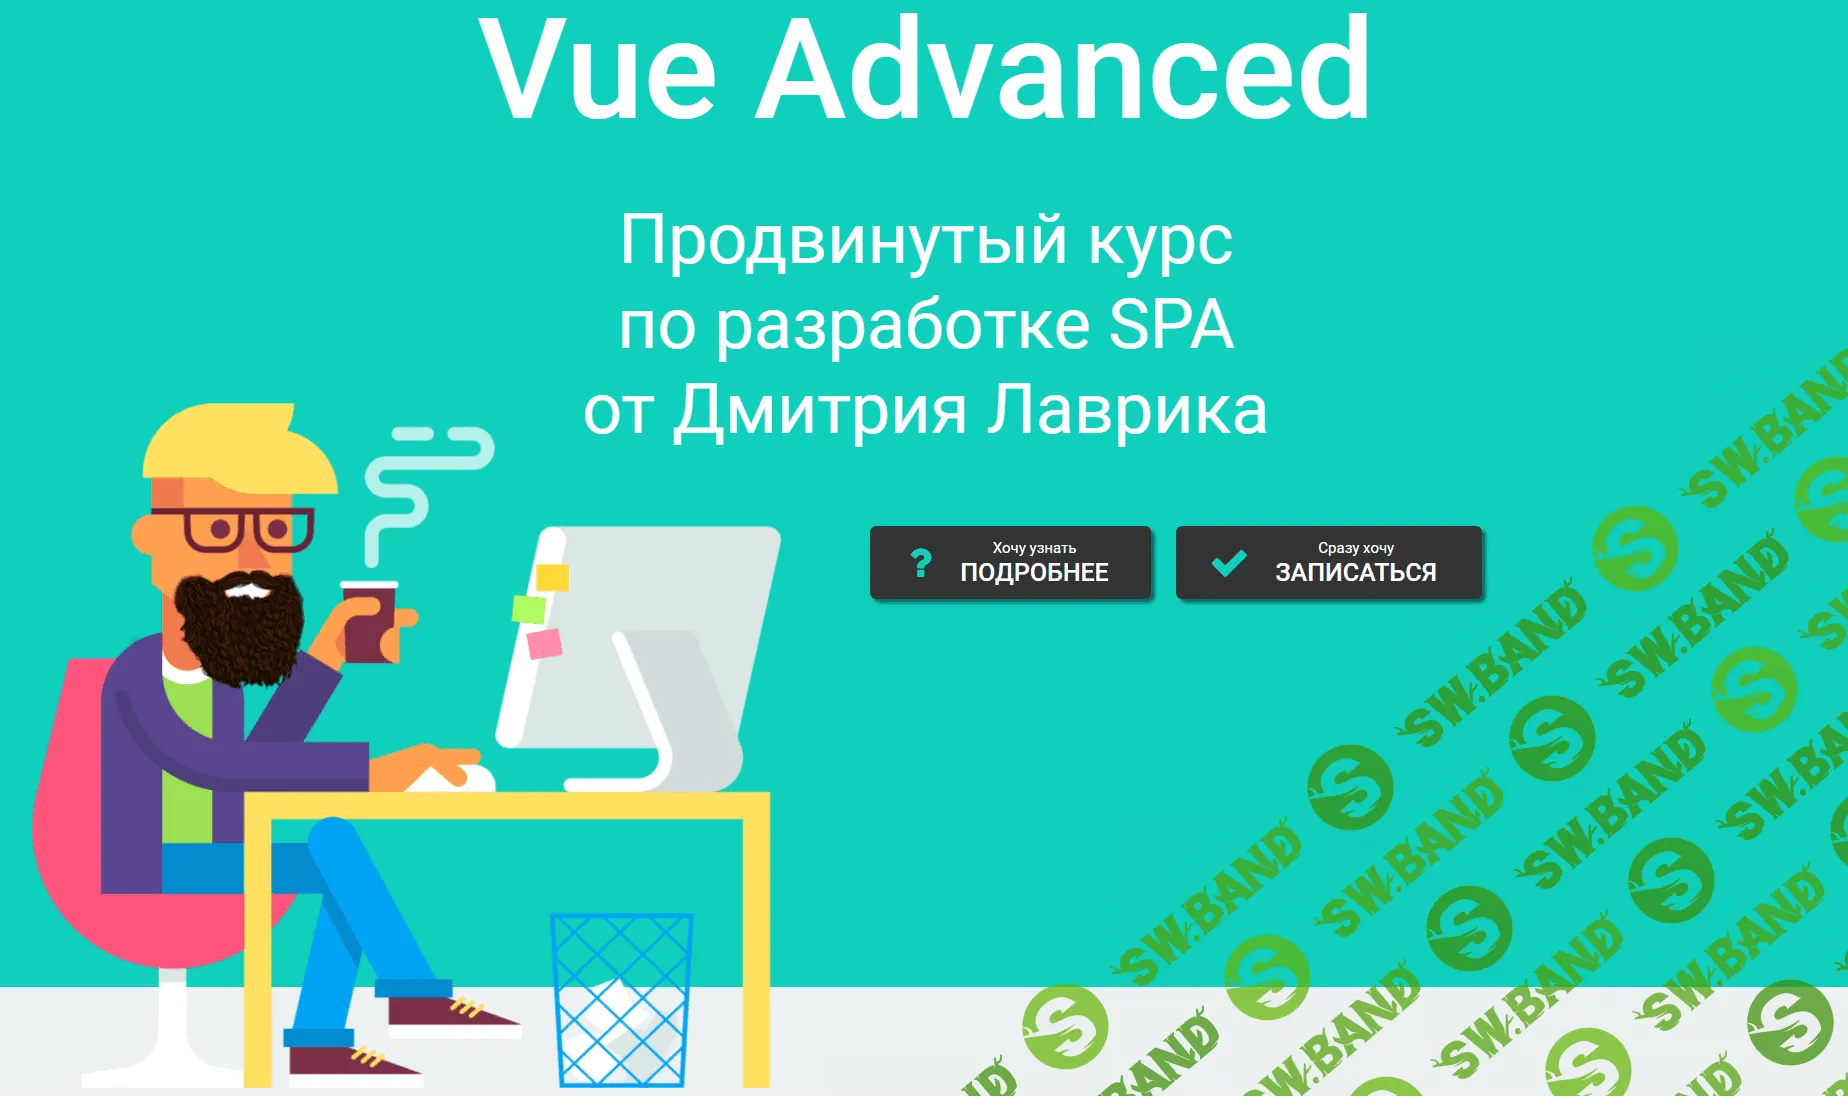 [Дмитрий Лаврик] Vue Advanced. Продвинутый курс по разработке SPA (2020)